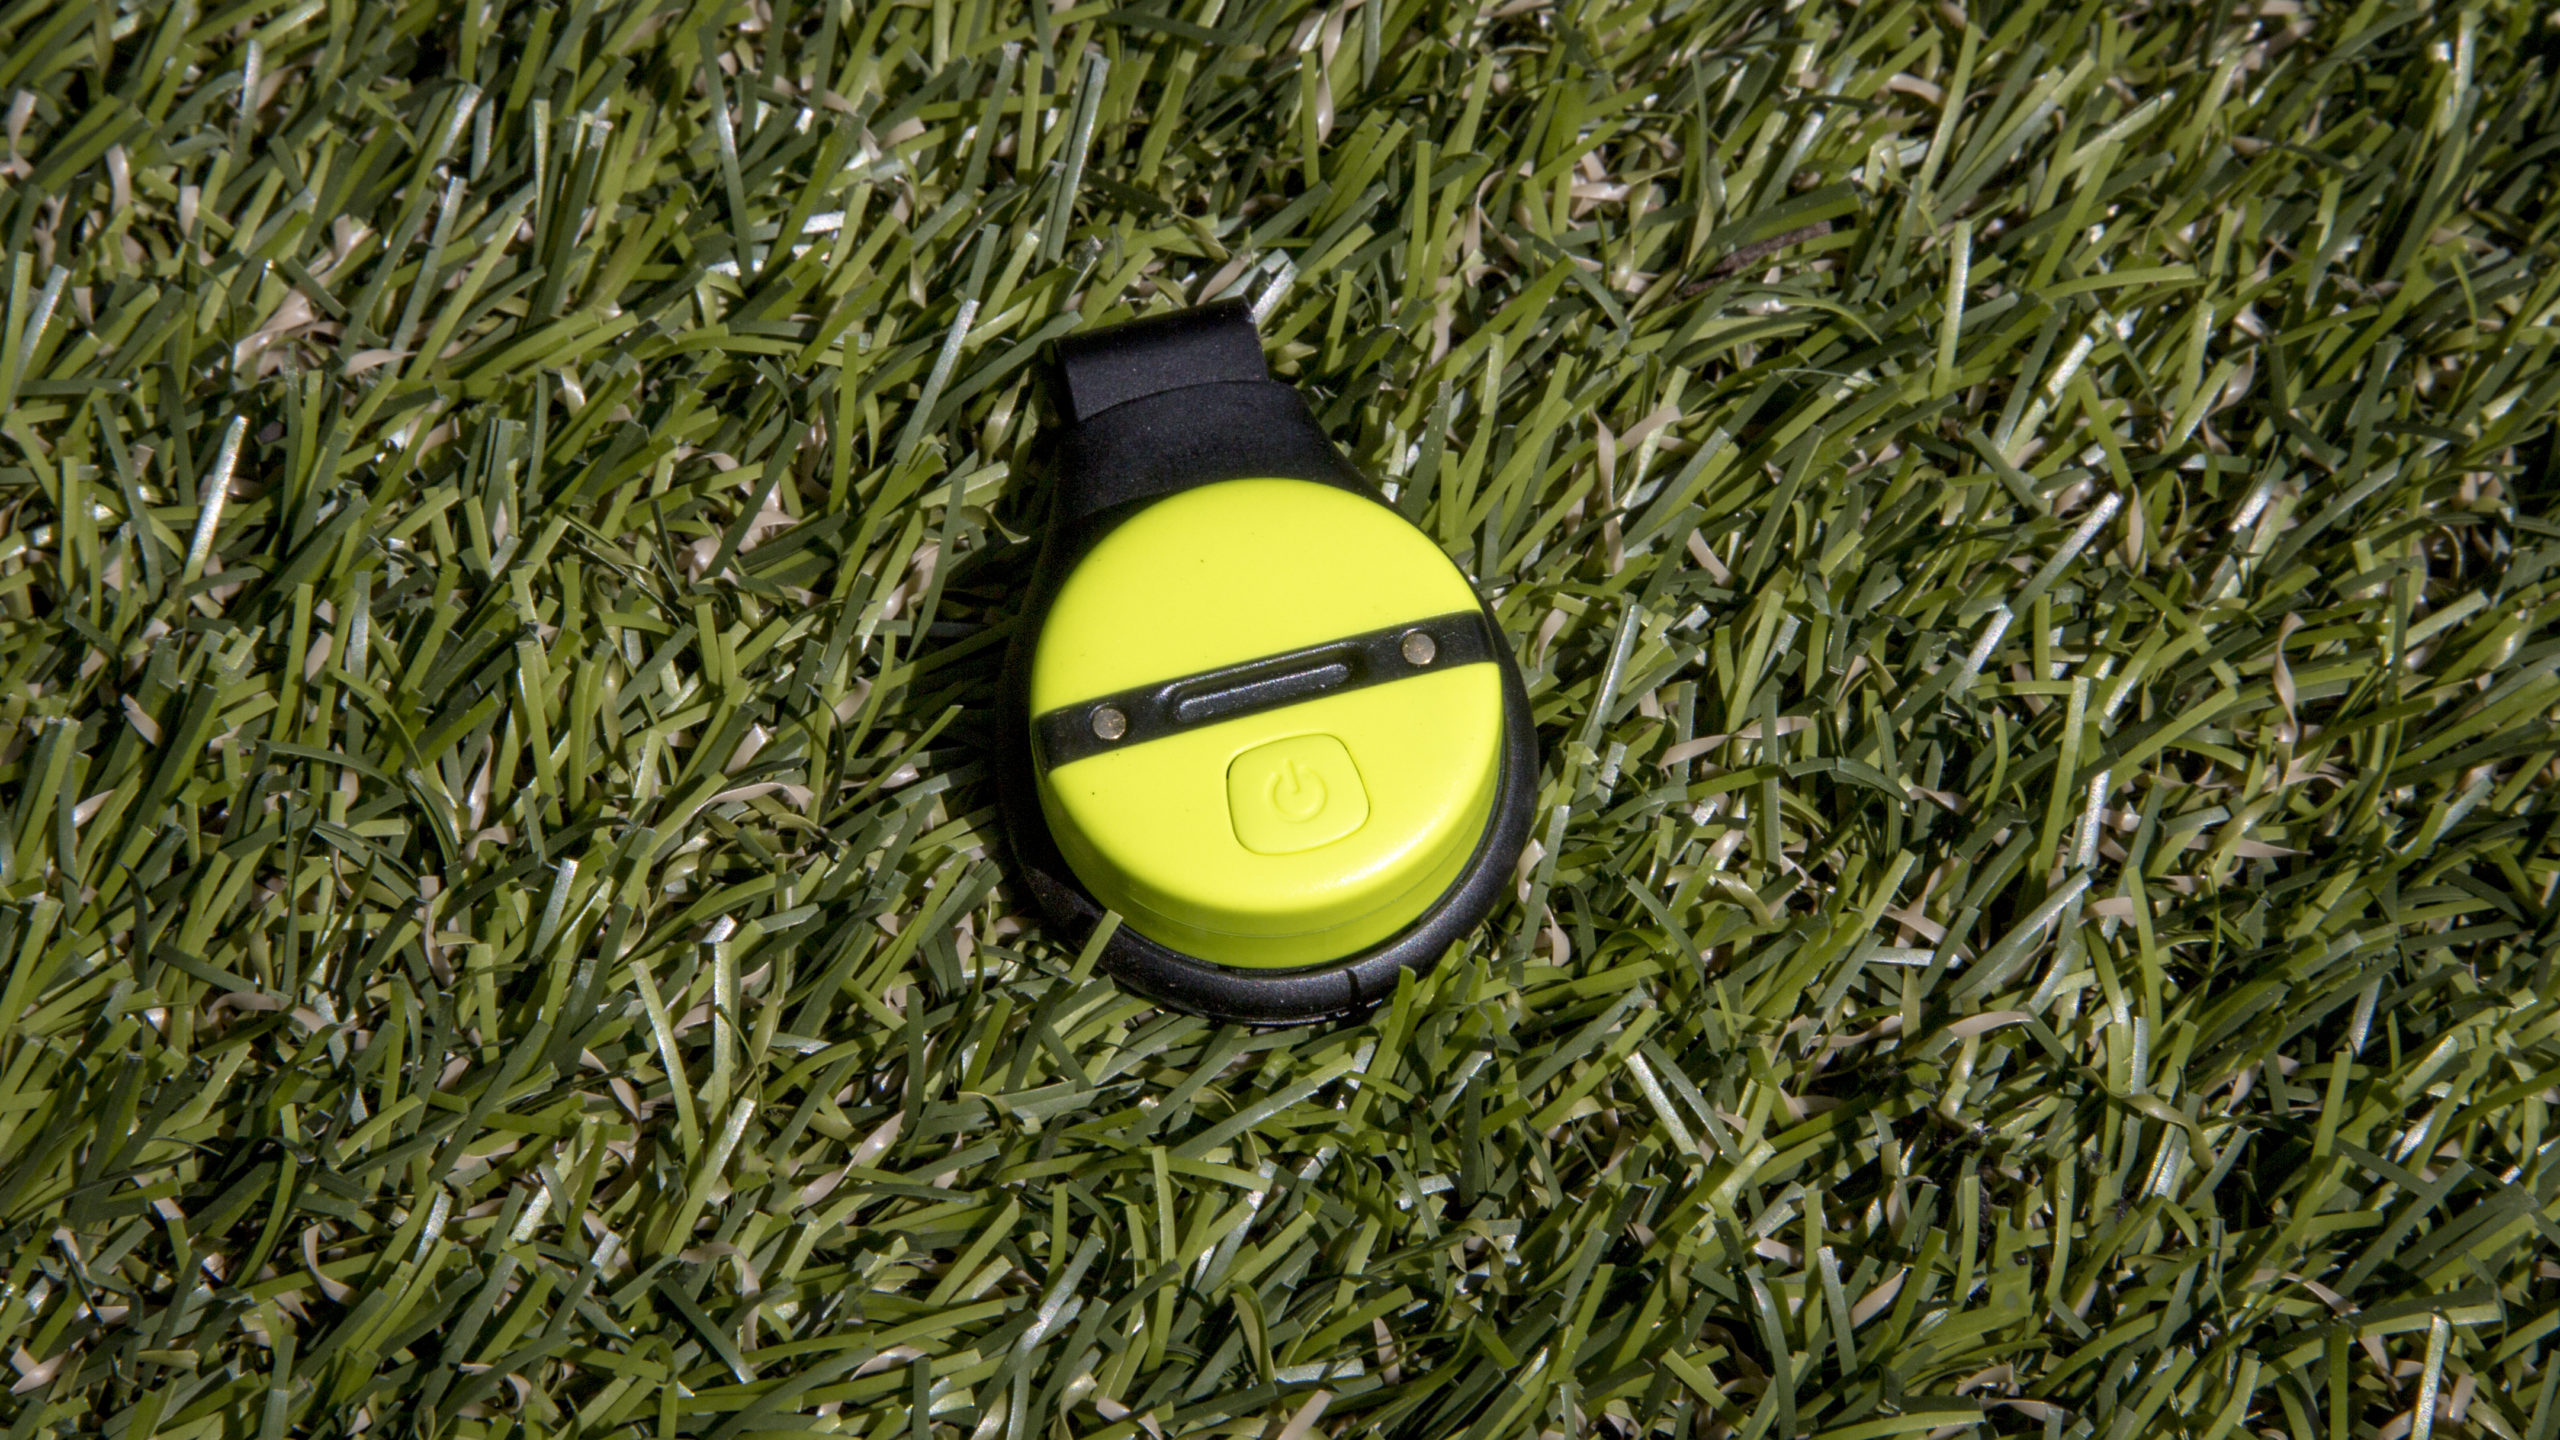 บทวิจารณ์ Zepp Golf 2: อุปกรณ์สวมใส่ที่ฉลาดที่สุดของสนามกอล์ฟนี้หรือไม่?